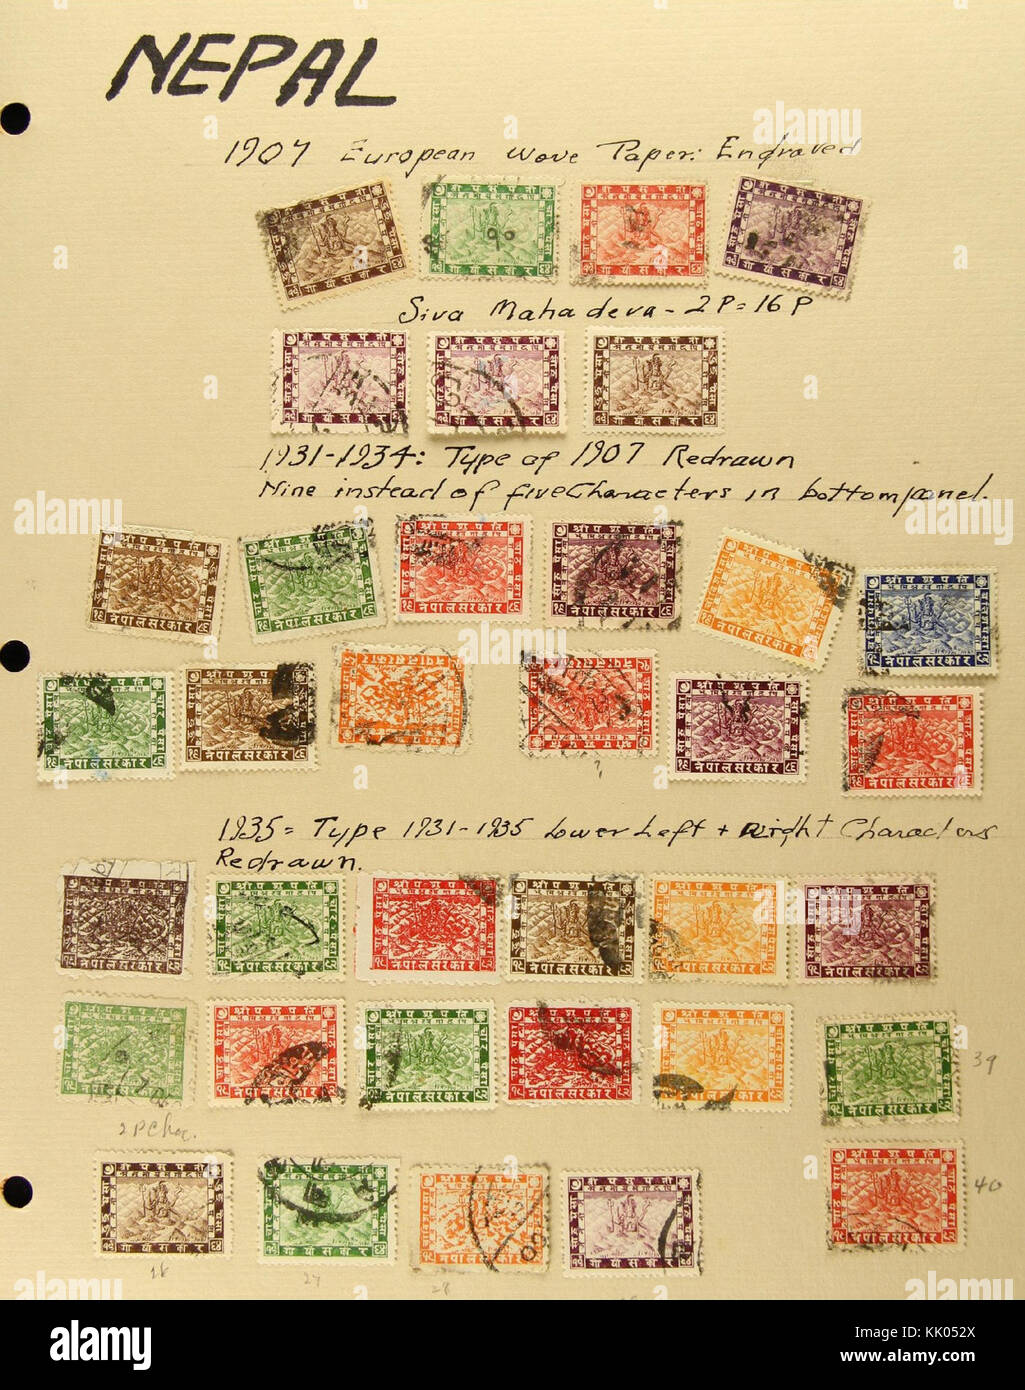 Stamp Nepal Pashupati selection Stock Photo